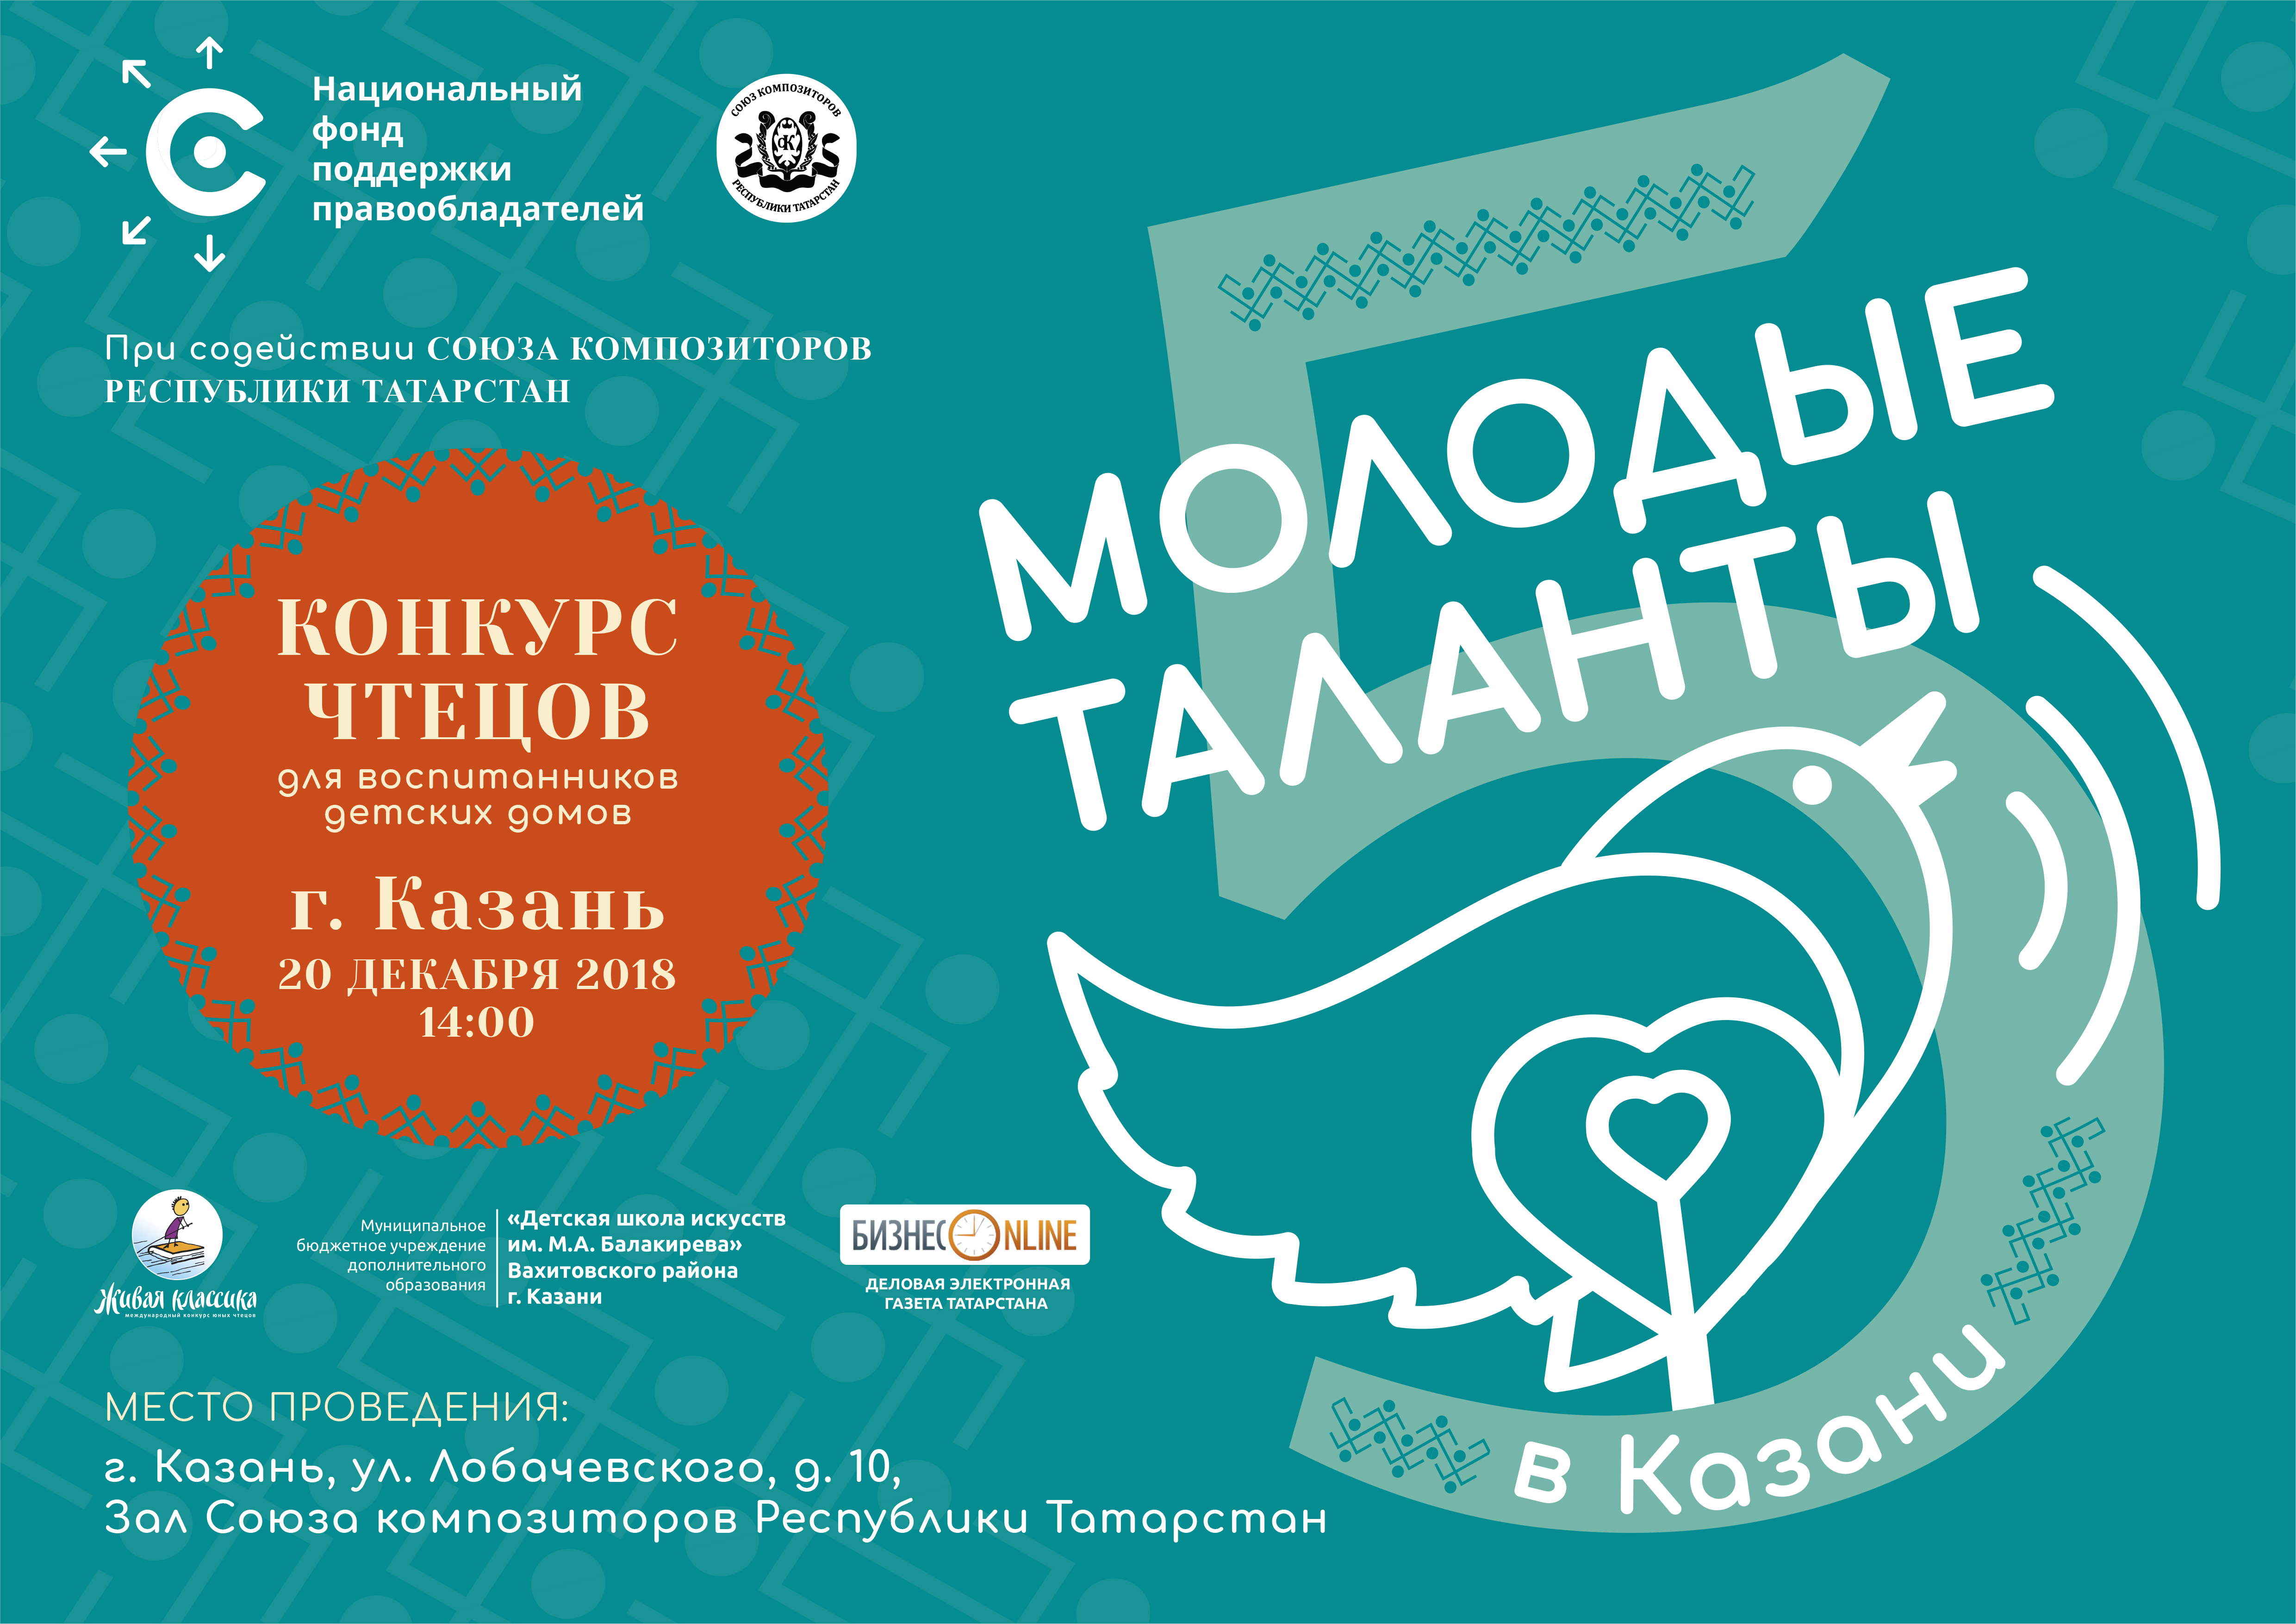 В Республике Татарстан состоится юбилейный пятый конкурс «Молодые таланты».